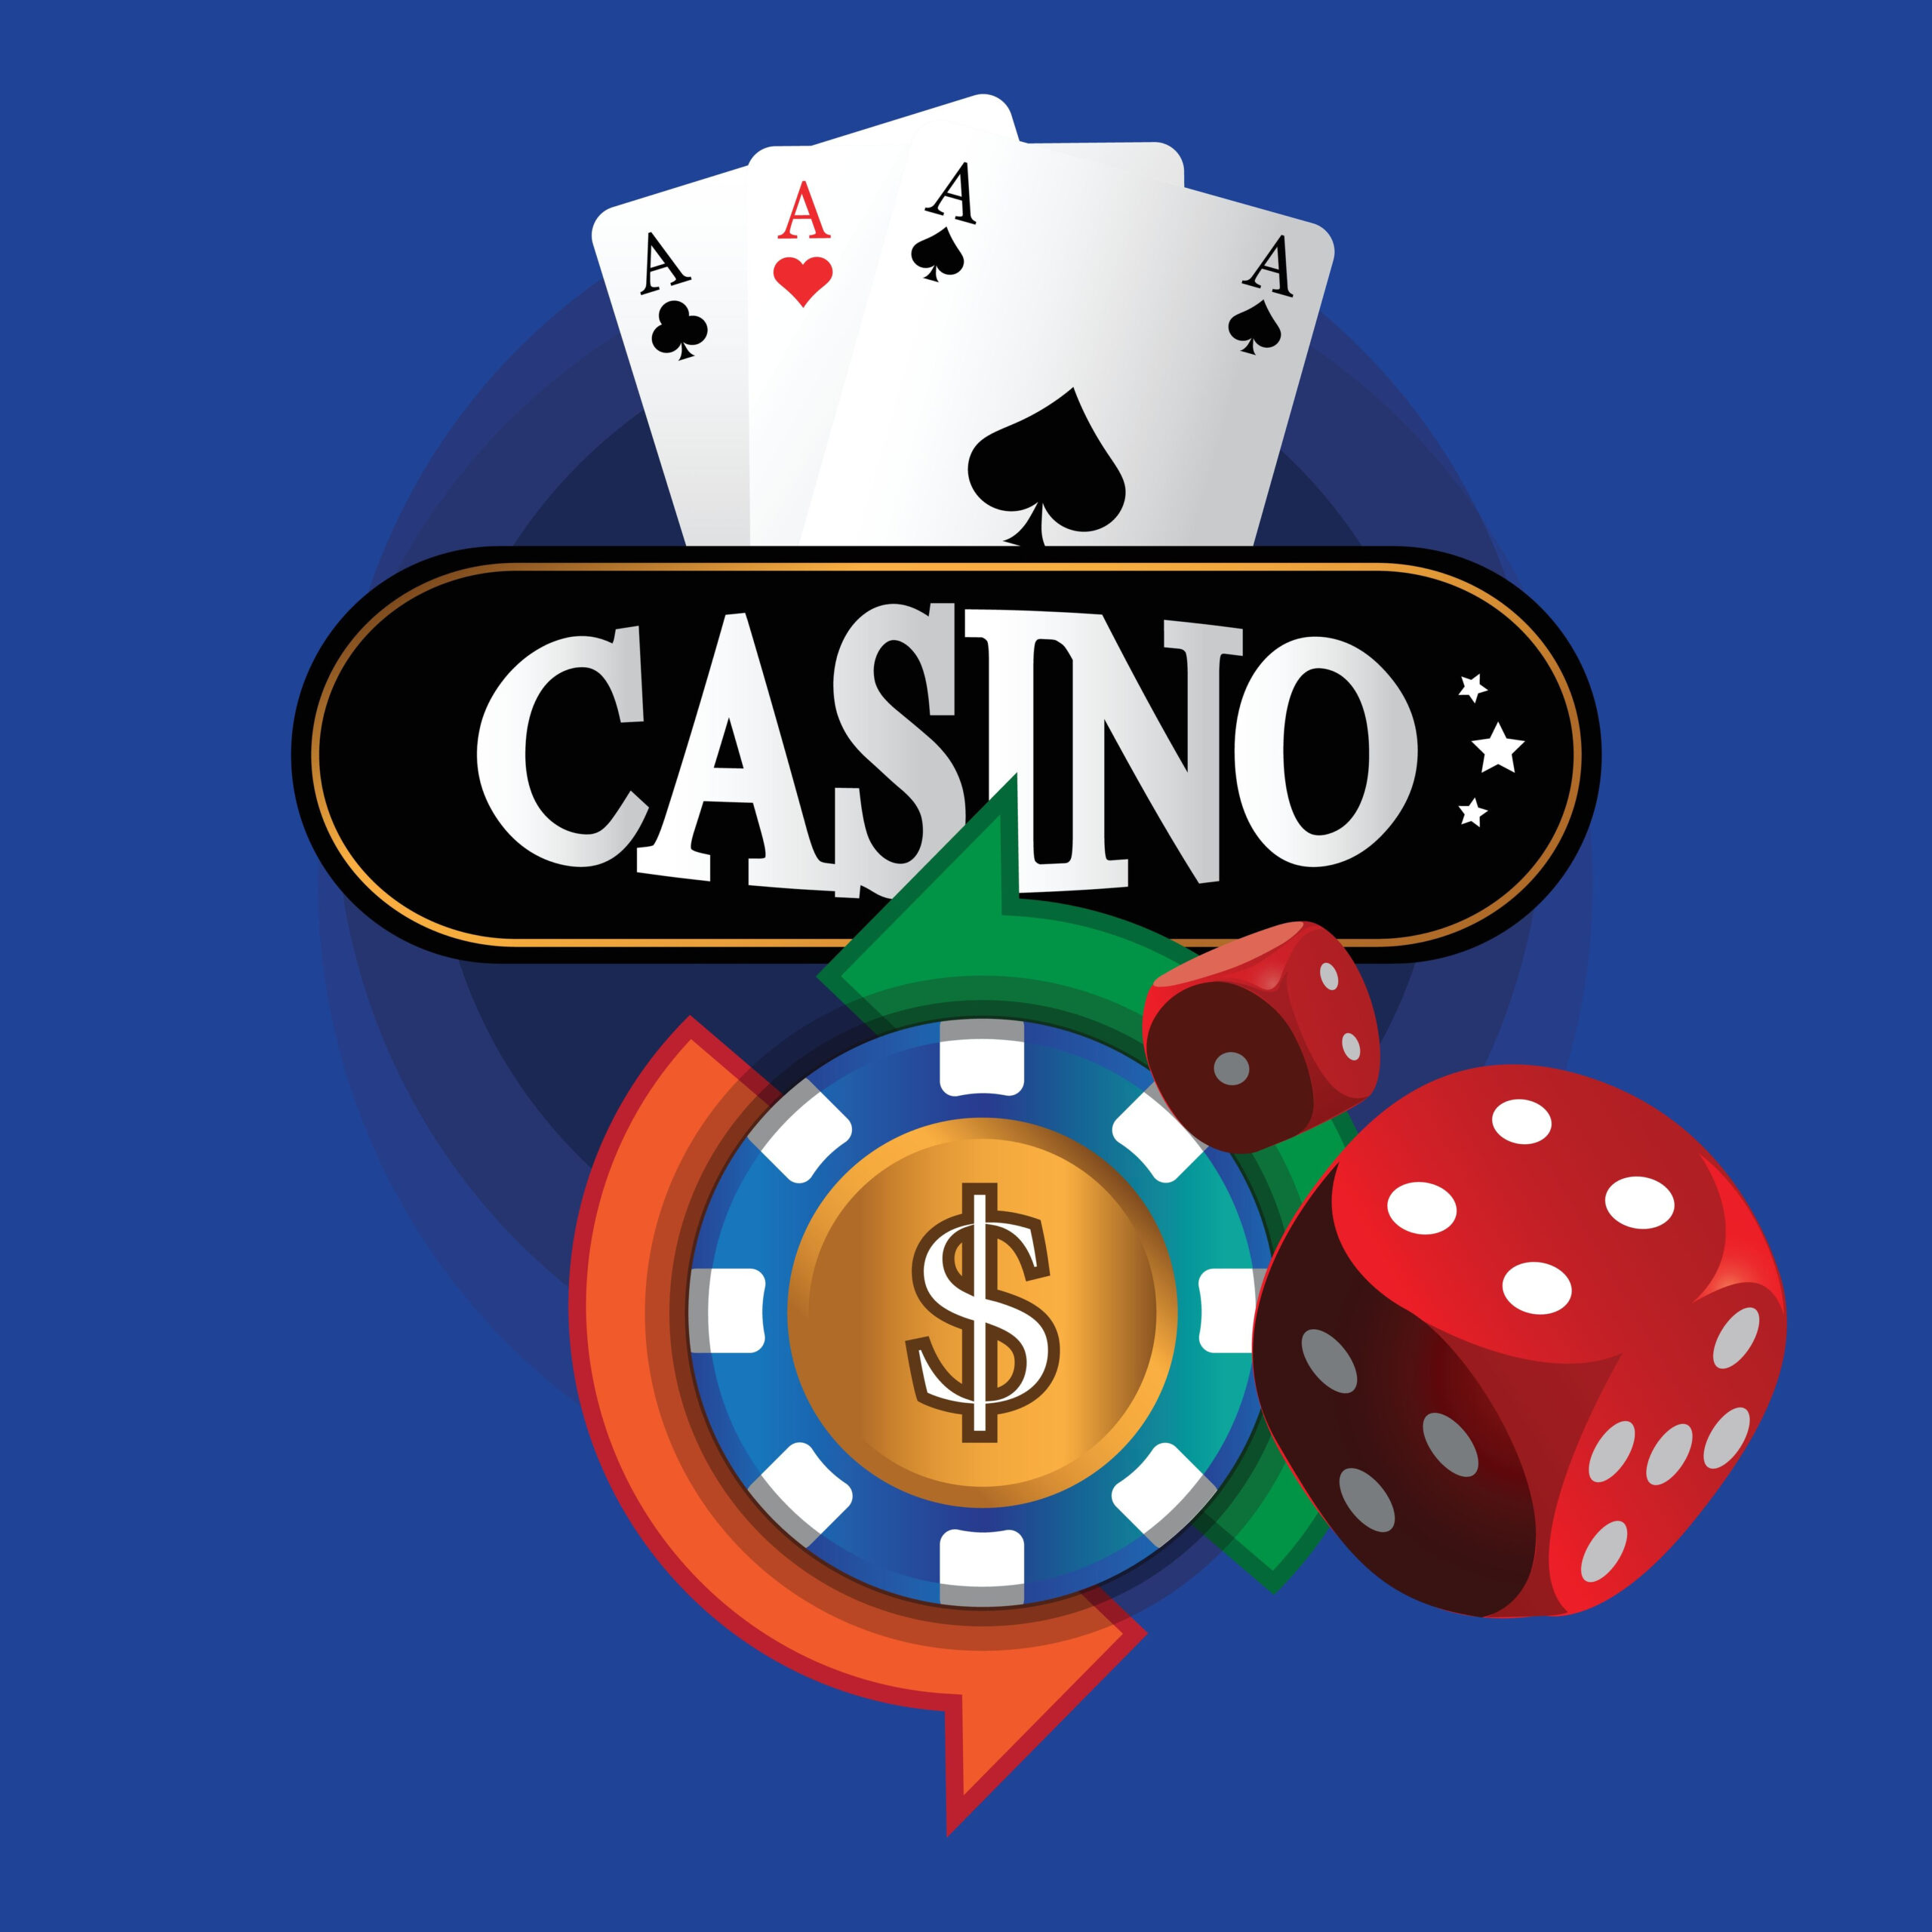 Agregue estos 10 Mangets a su jugar casino online